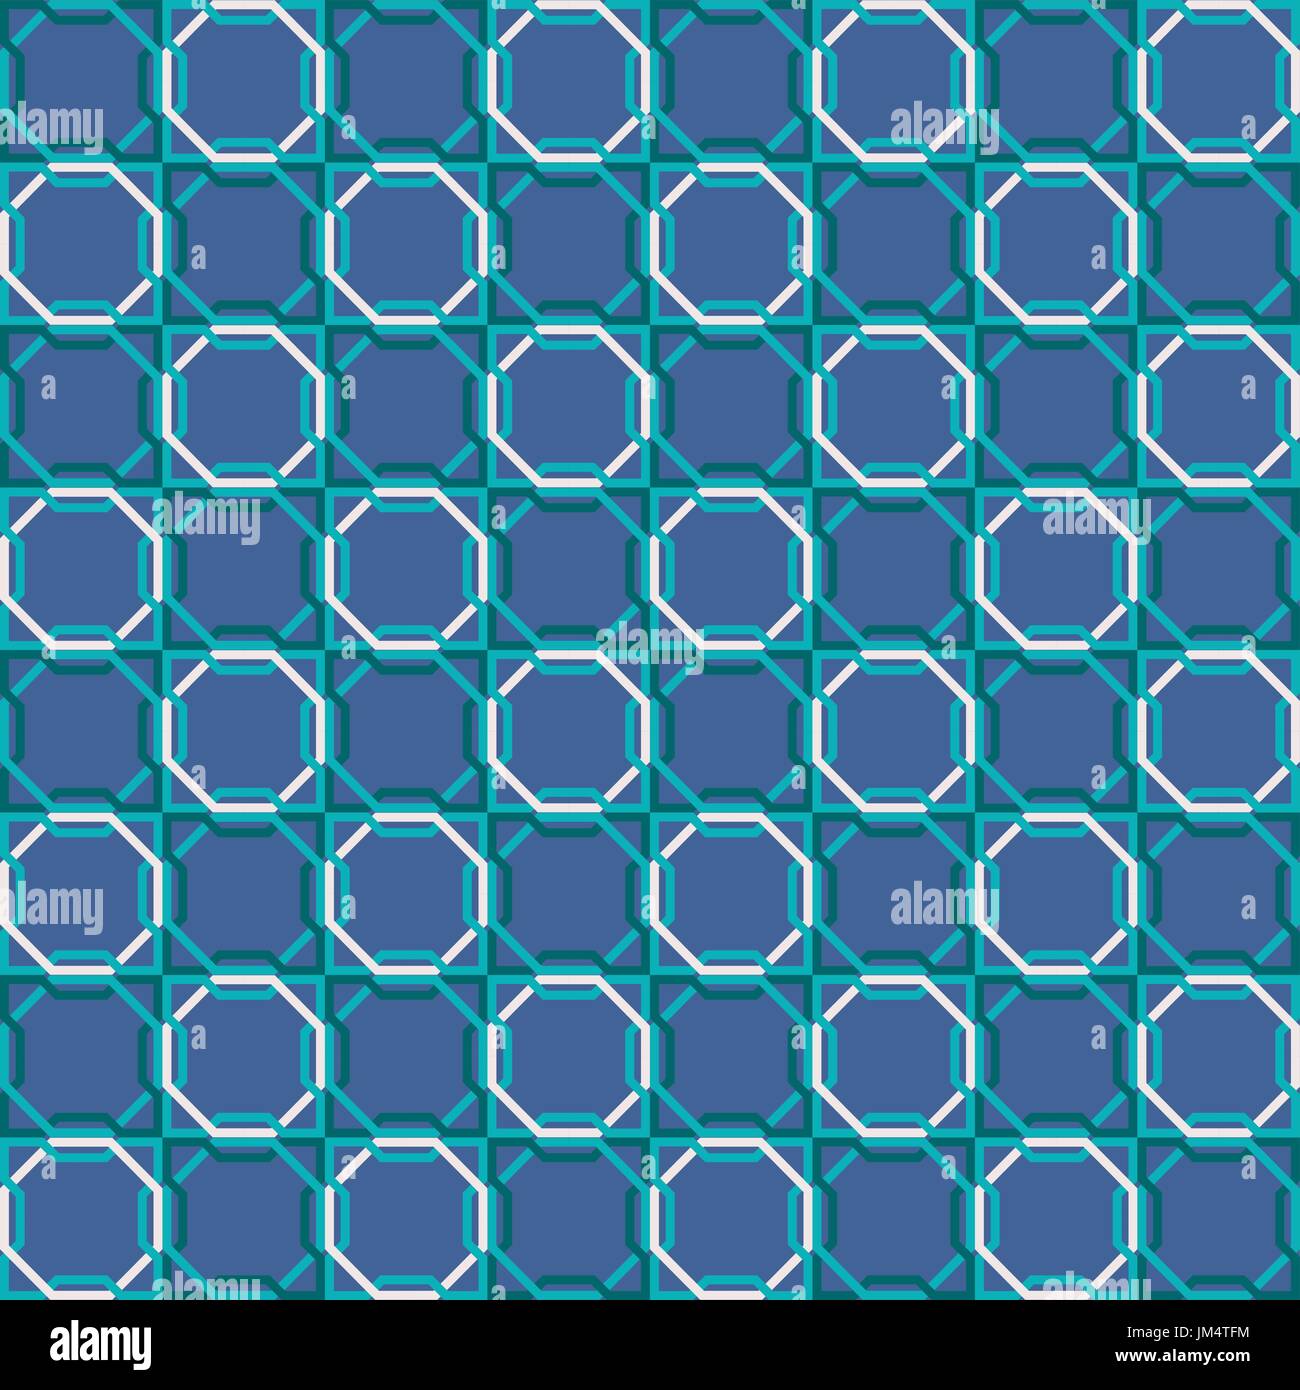 Arabische Mosaik nahtlose Kachelmuster mit abstrakten blaue geometrische Form Dekoration. EPS10 Vektor. Stock Vektor